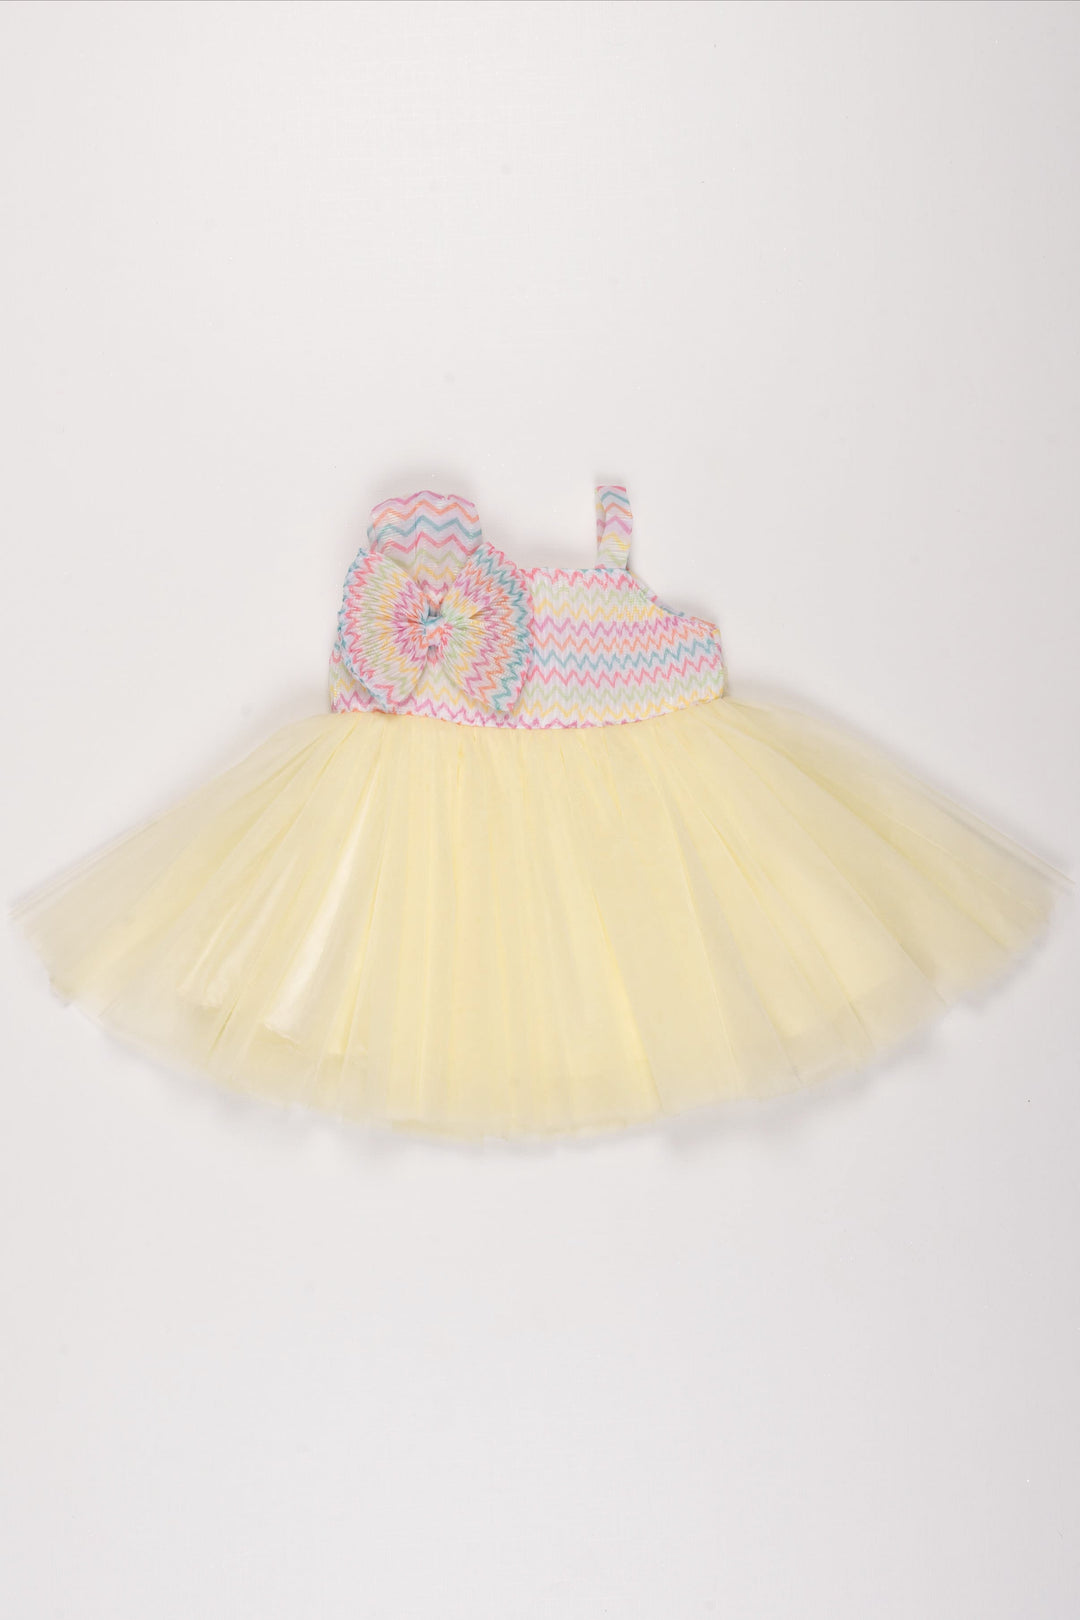 The Nesavu Girls Tutu Frock Pastel Chevron Knit and Lemon Yellow Tulle Dress for Girls Nesavu 12 (3M) / Yellow / Plain Net PF172B-12 Girls Pastel Chevron Tulle Dress | Lemon Yellow Party Wear Frock | The Nesavu